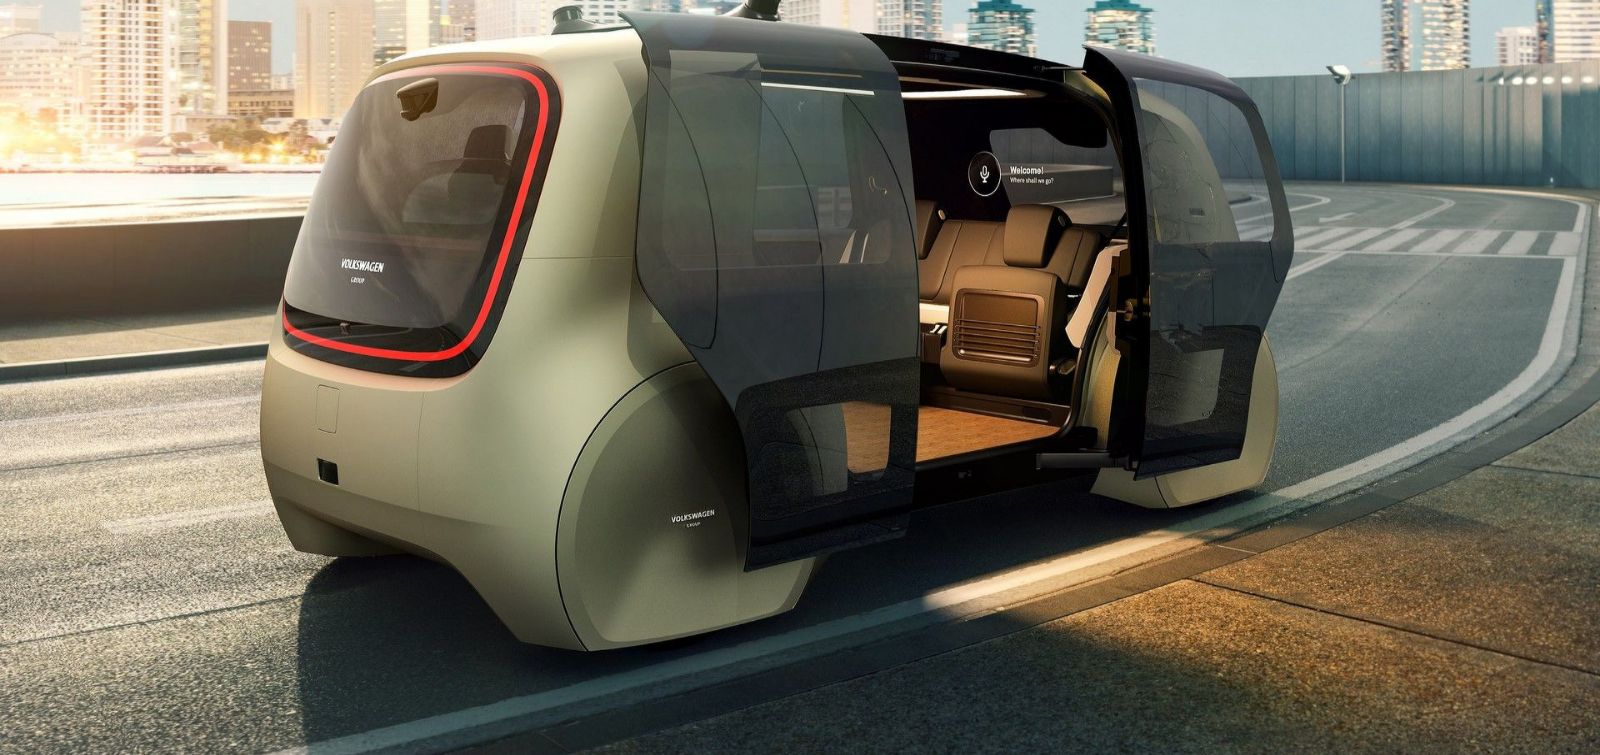 Volkswagen Sedric: un veicolo elettrico per la mobilità collettiva nelle mega city.